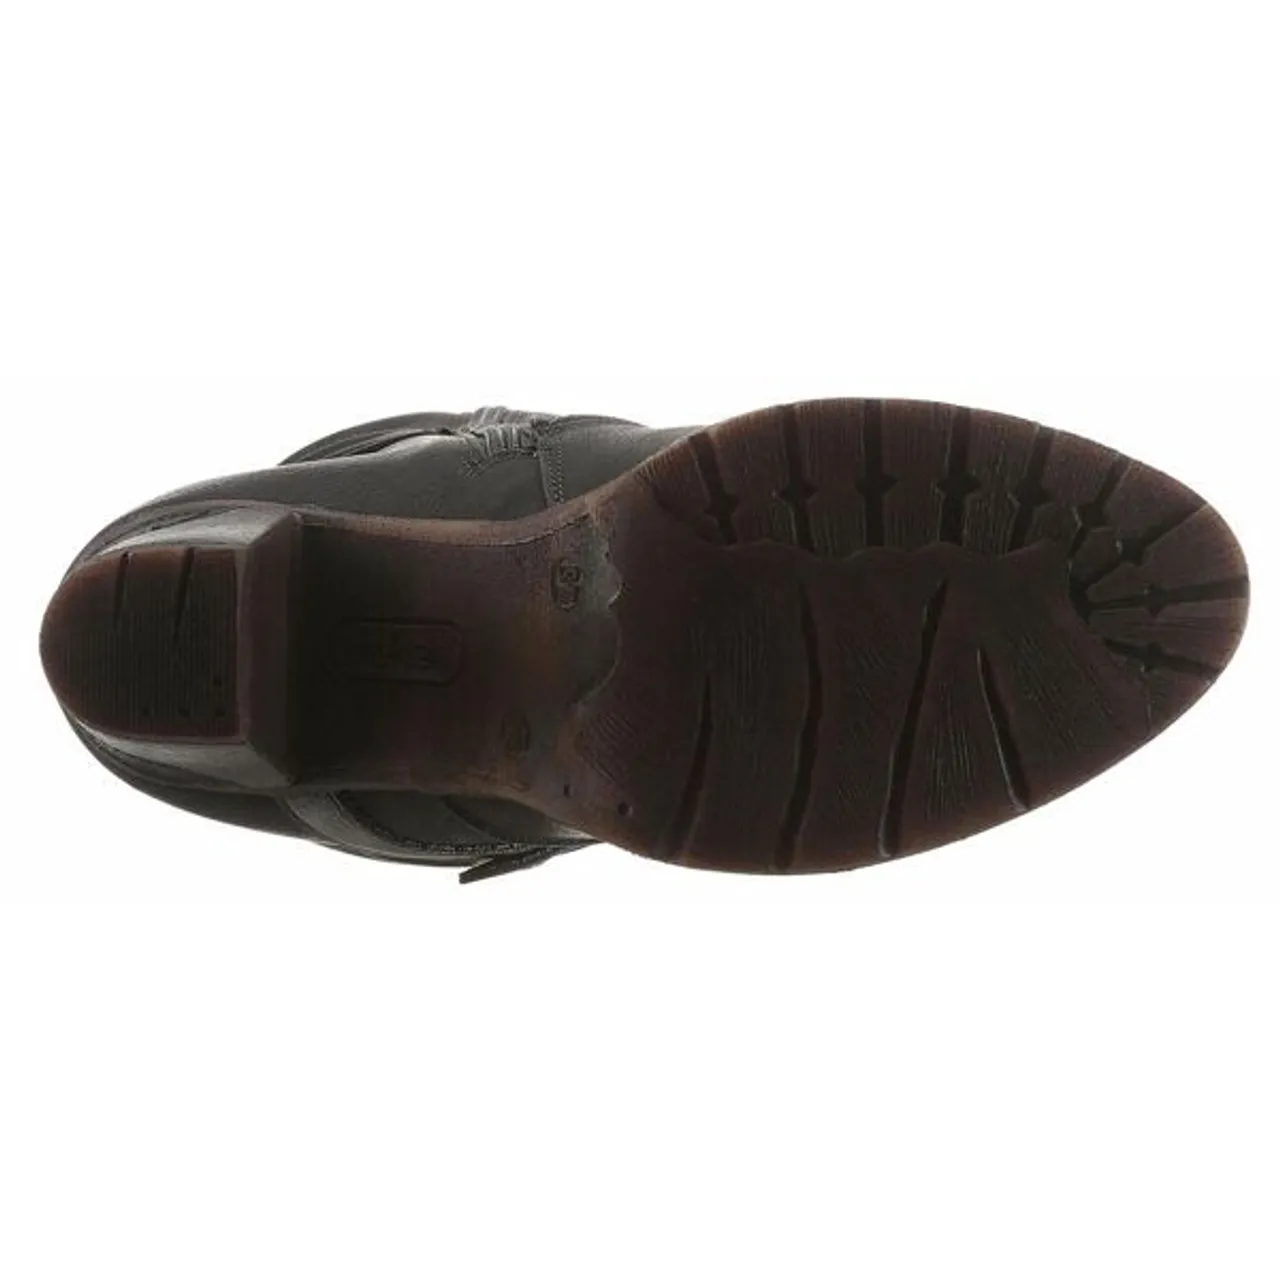 Winterstiefel RIEKER Gr. 42 (8), Normalschaft, schwarz Damen Schuhe Winterstiefel mit stylischem Zierriemchen